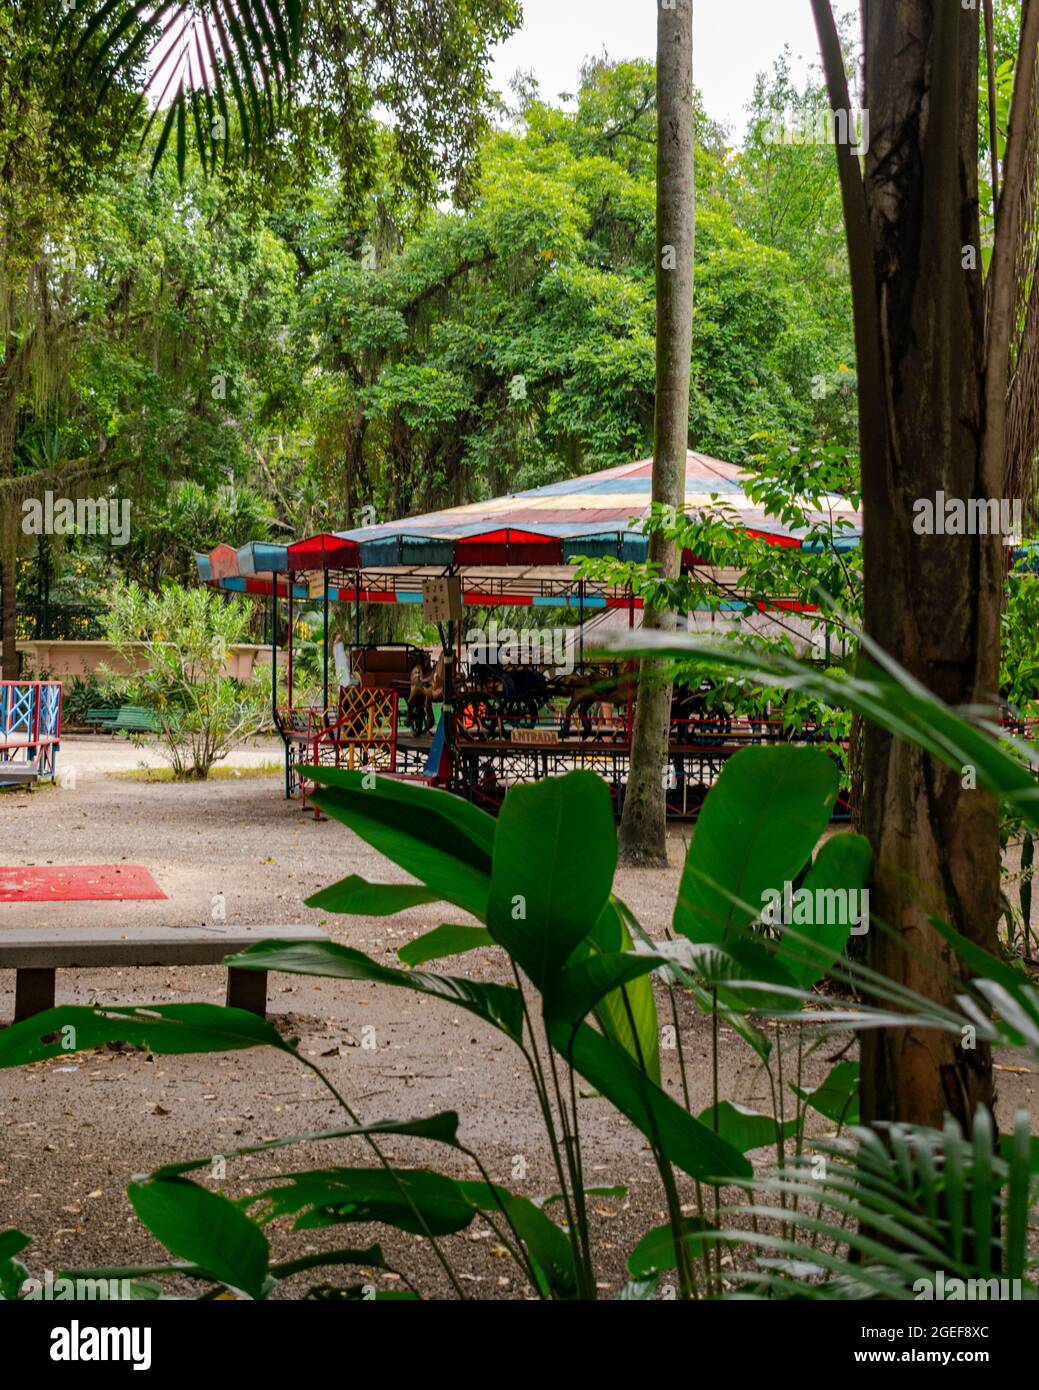 Parque público urbano, conocido como “Campo de São Bento”, cerrado y sin personas debido al bloqueo decretado durante la pandemia de COVID-19 Foto de stock